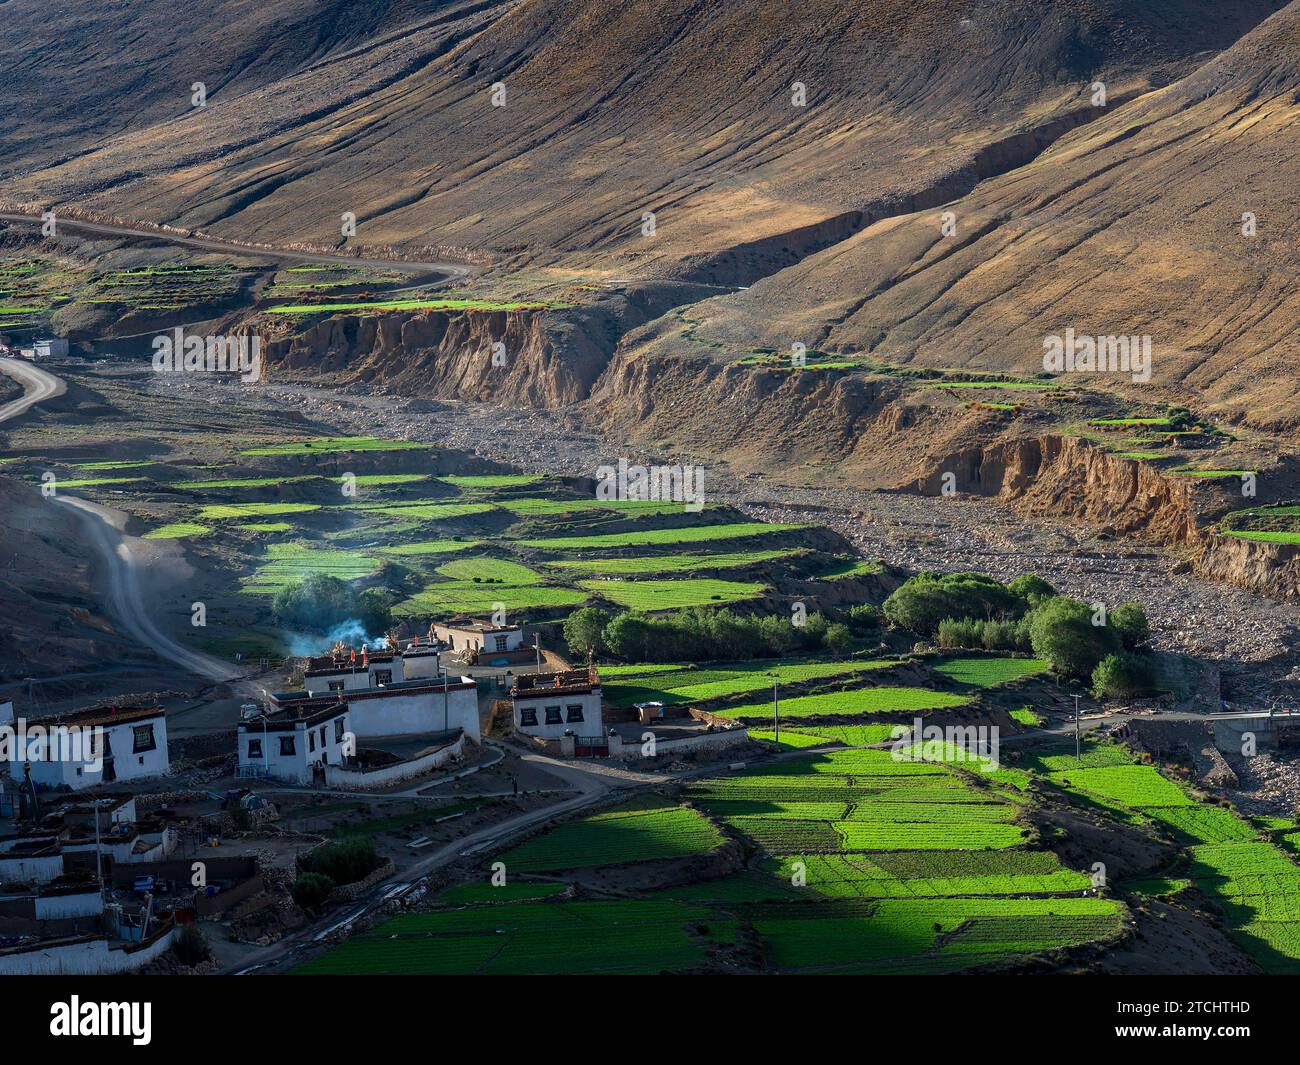 Village entre terrasses verdoyantes, culture du riz et agriculture dans les hauts plateaux du Tibet, Chine Banque D'Images